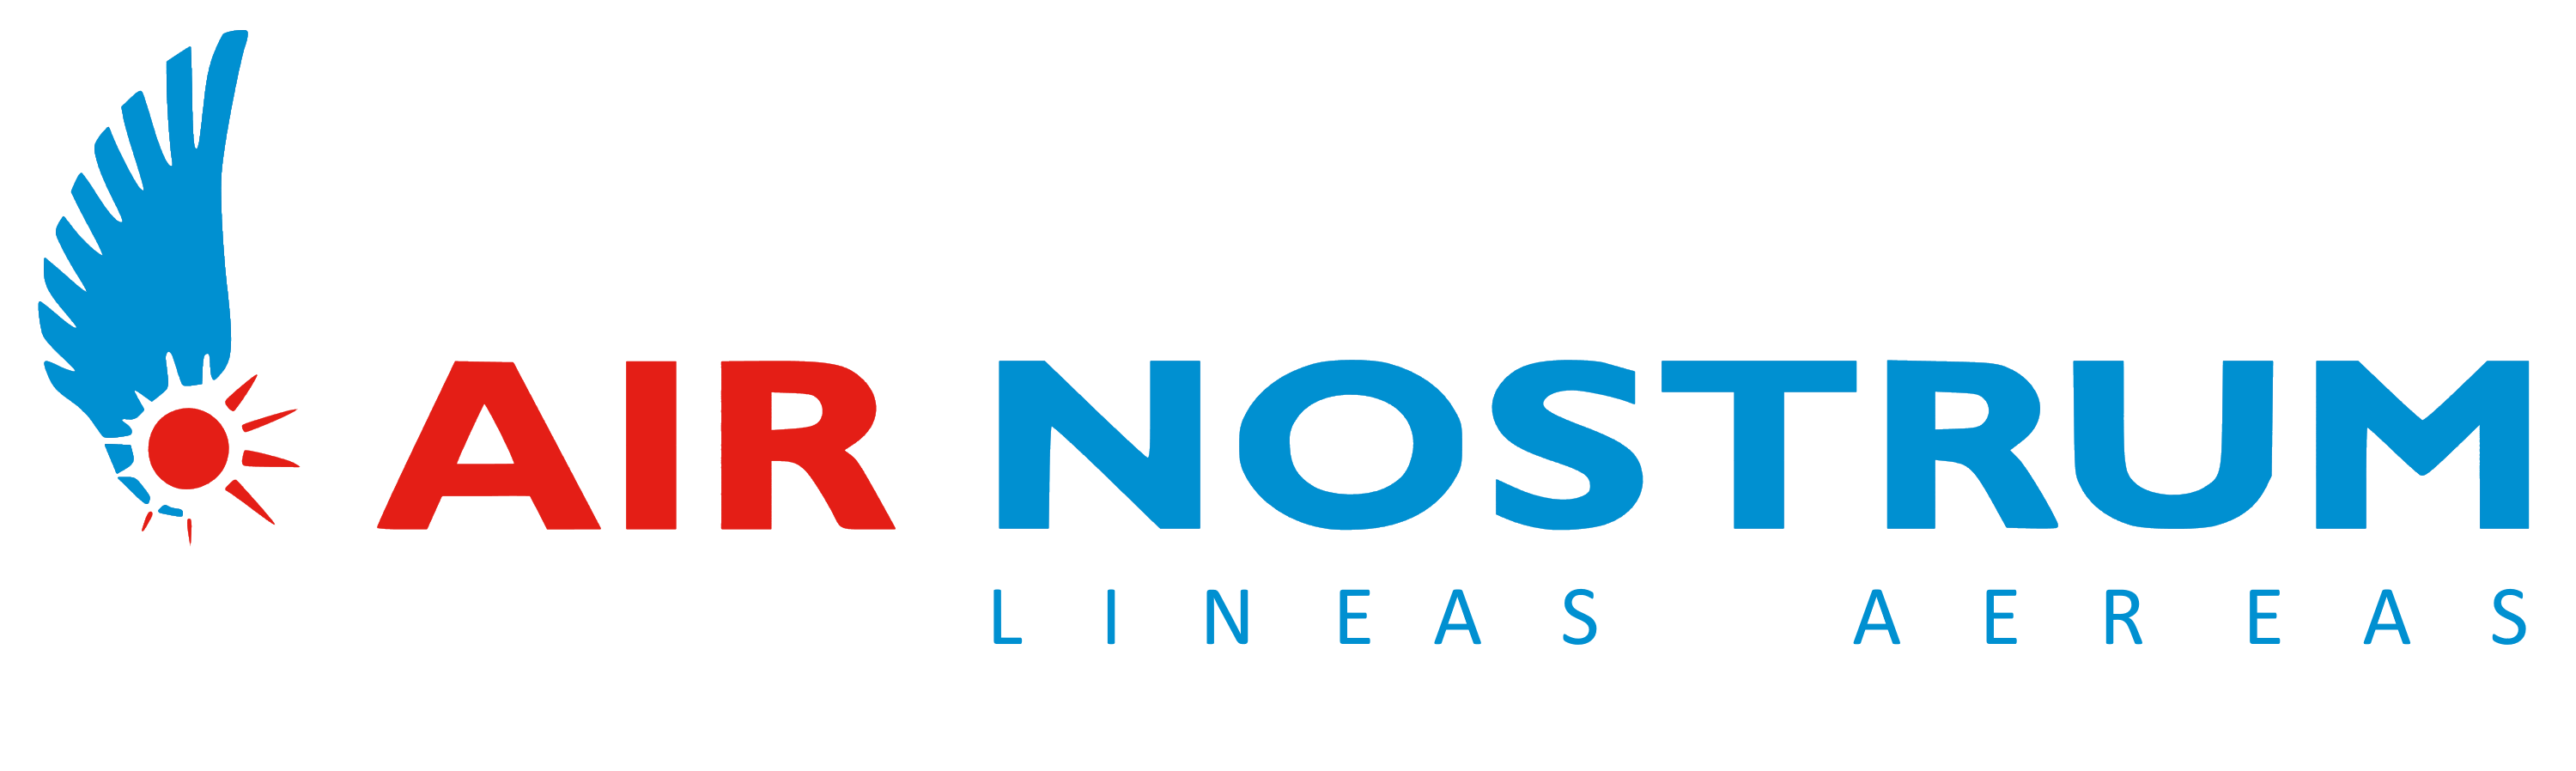 Air Nostrum logo, logotype